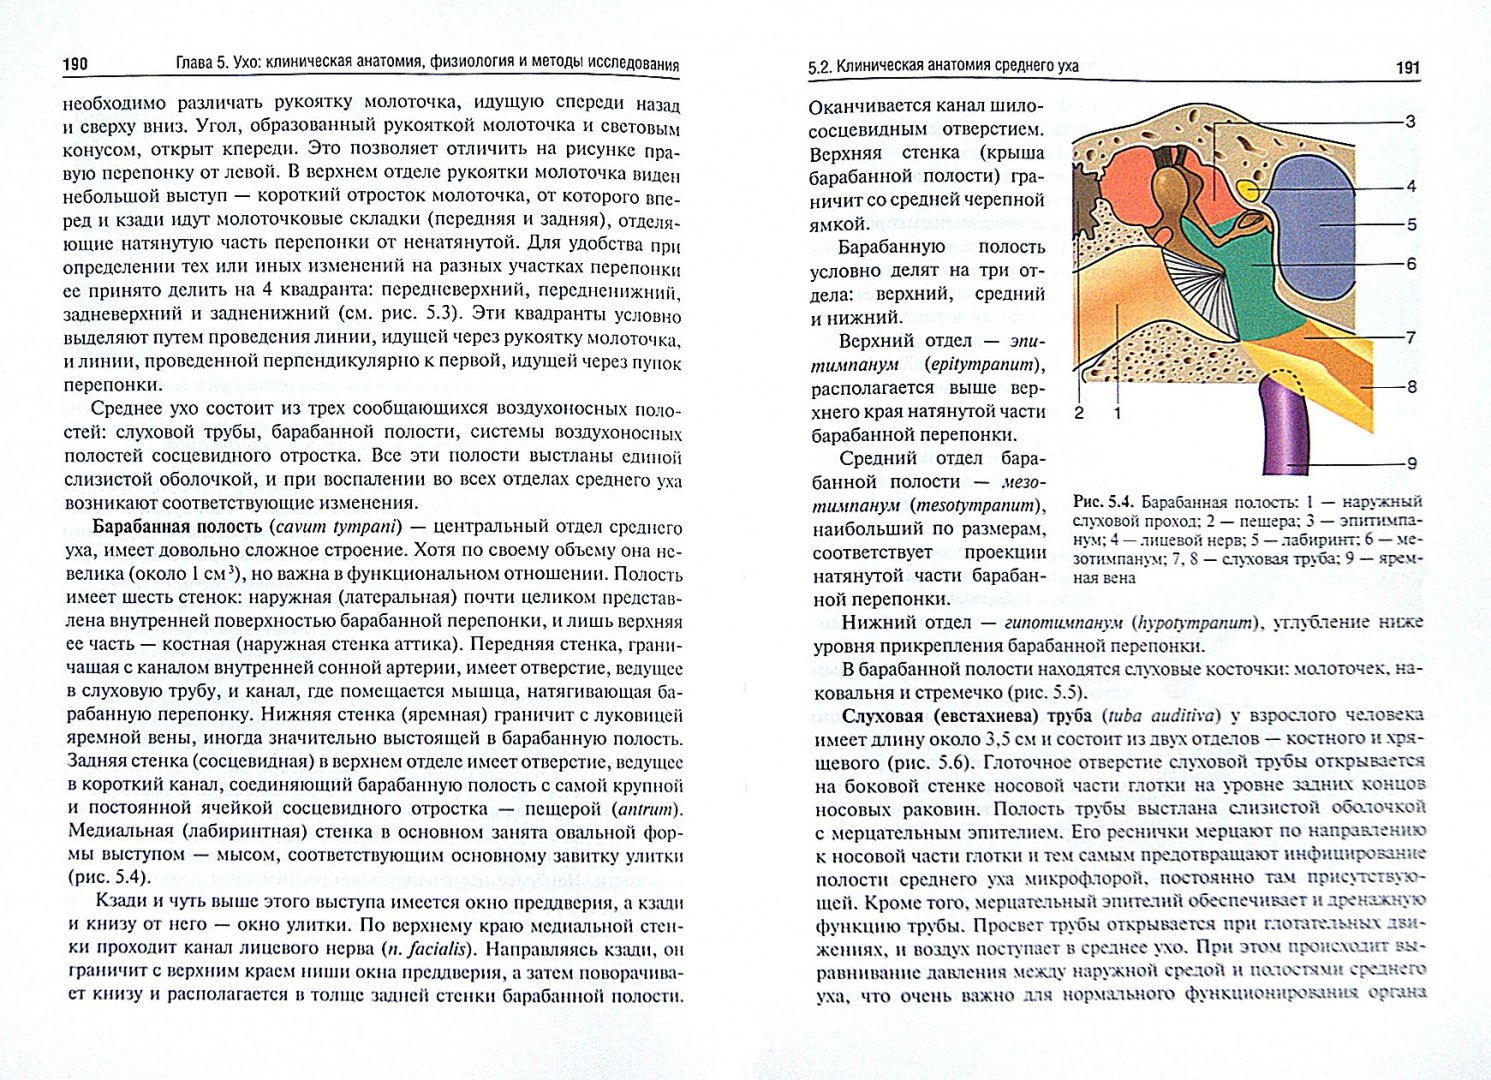 Иллюстрация 1 из 7 для Оториноларингология. Учебник - Виктор Вишняков | Лабиринт - книги. Источник: Лабиринт